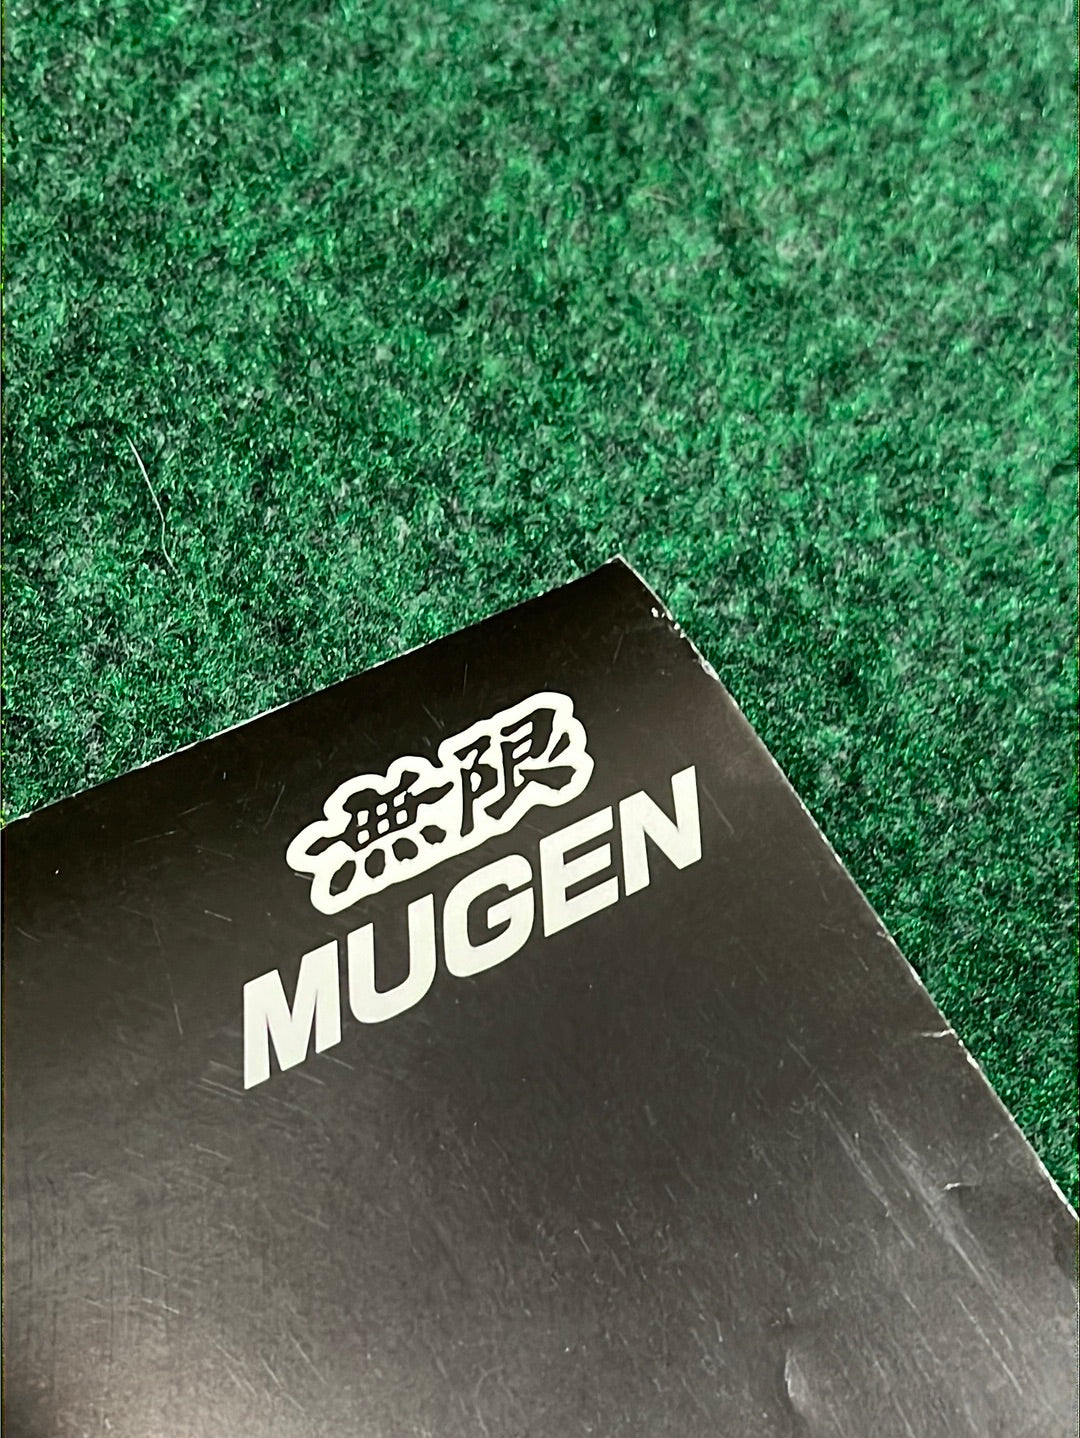 MUGEN - JGTC 2002 Honda Dome Mugen NSX Tribute Poster